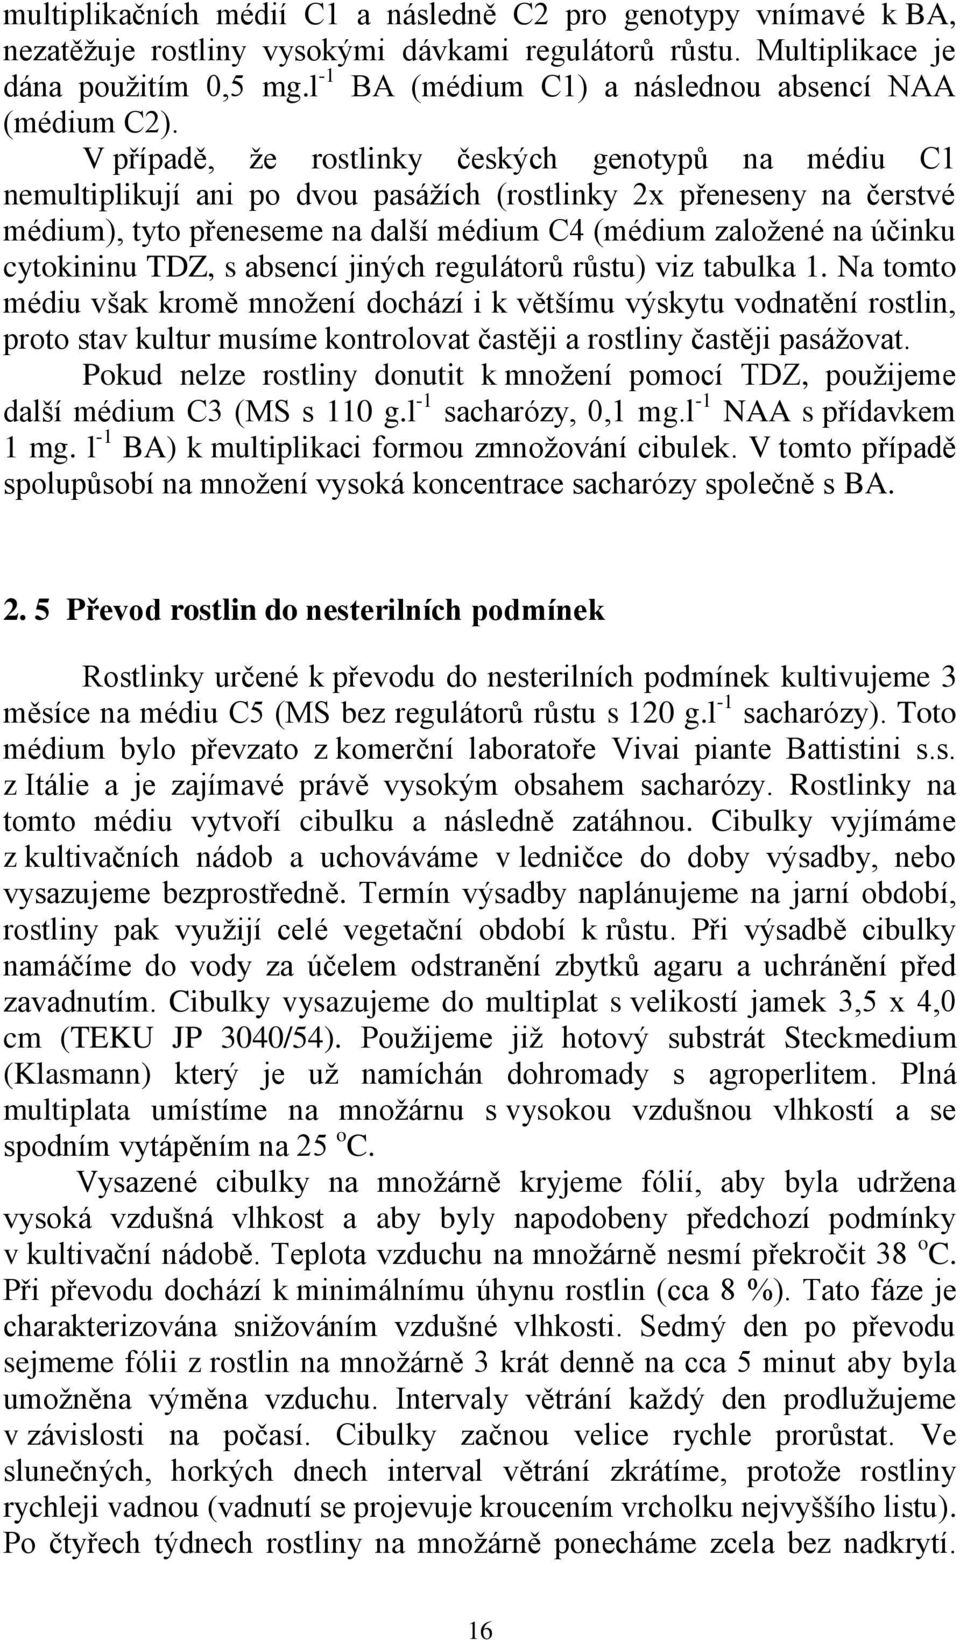 V případě, že rostlinky českých genotypů na médiu C1 nemultiplikují ani po dvou pasážích (rostlinky 2x přeneseny na čerstvé médium), tyto přeneseme na další médium C4 (médium založené na účinku